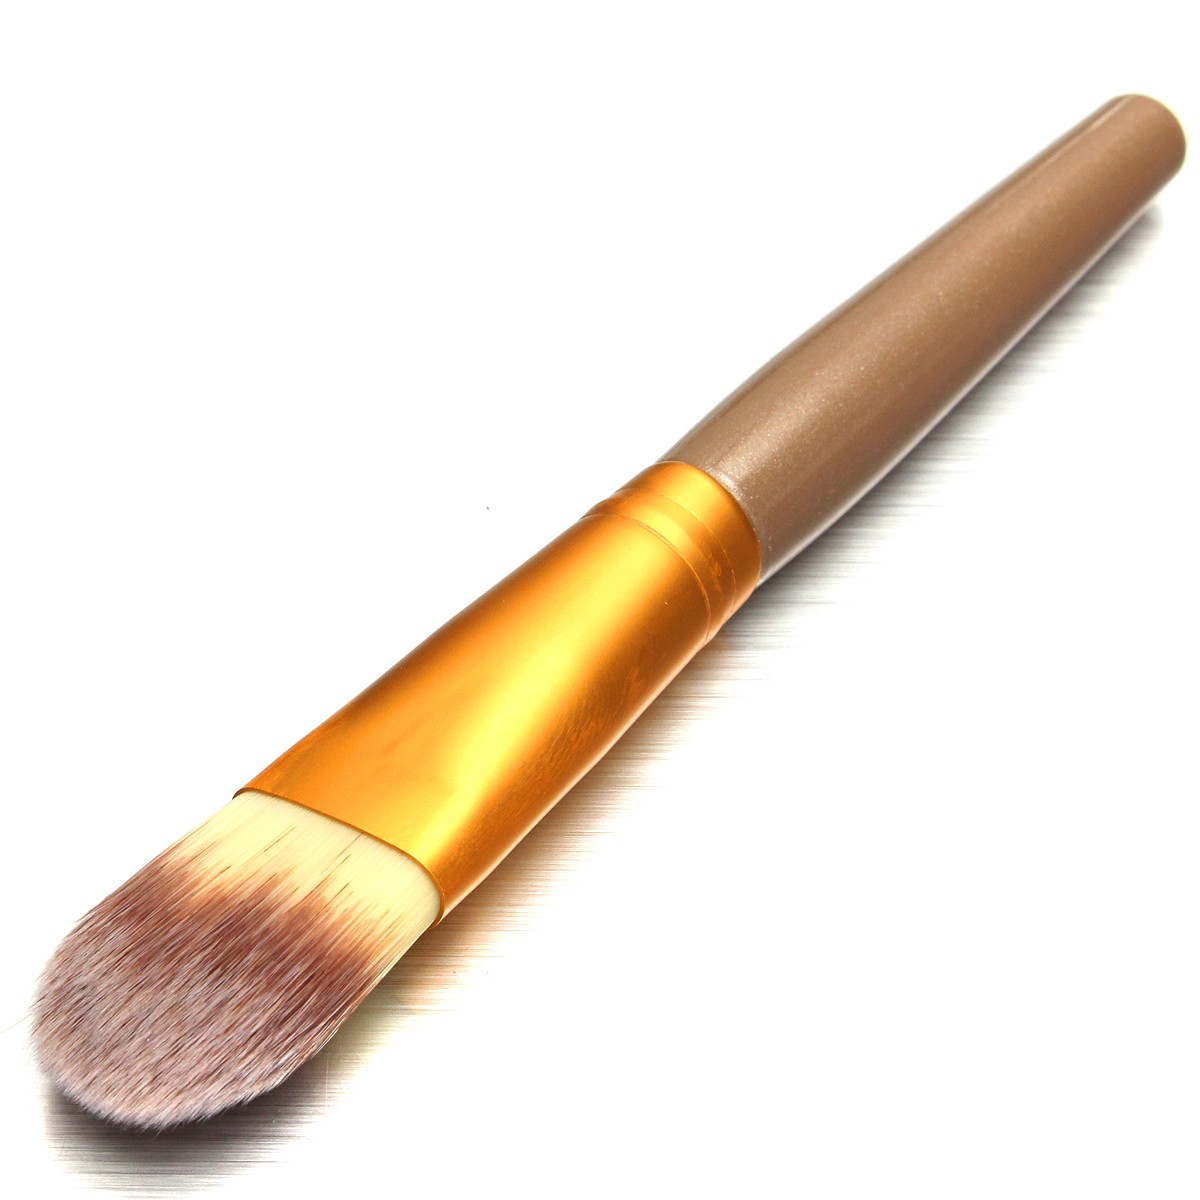 20pcs-Makeup-Brushes-Set-Kit-Blush-Foundation-Liquid-Eyeshadow-Eyeliner-Comestic-Powder-1108177